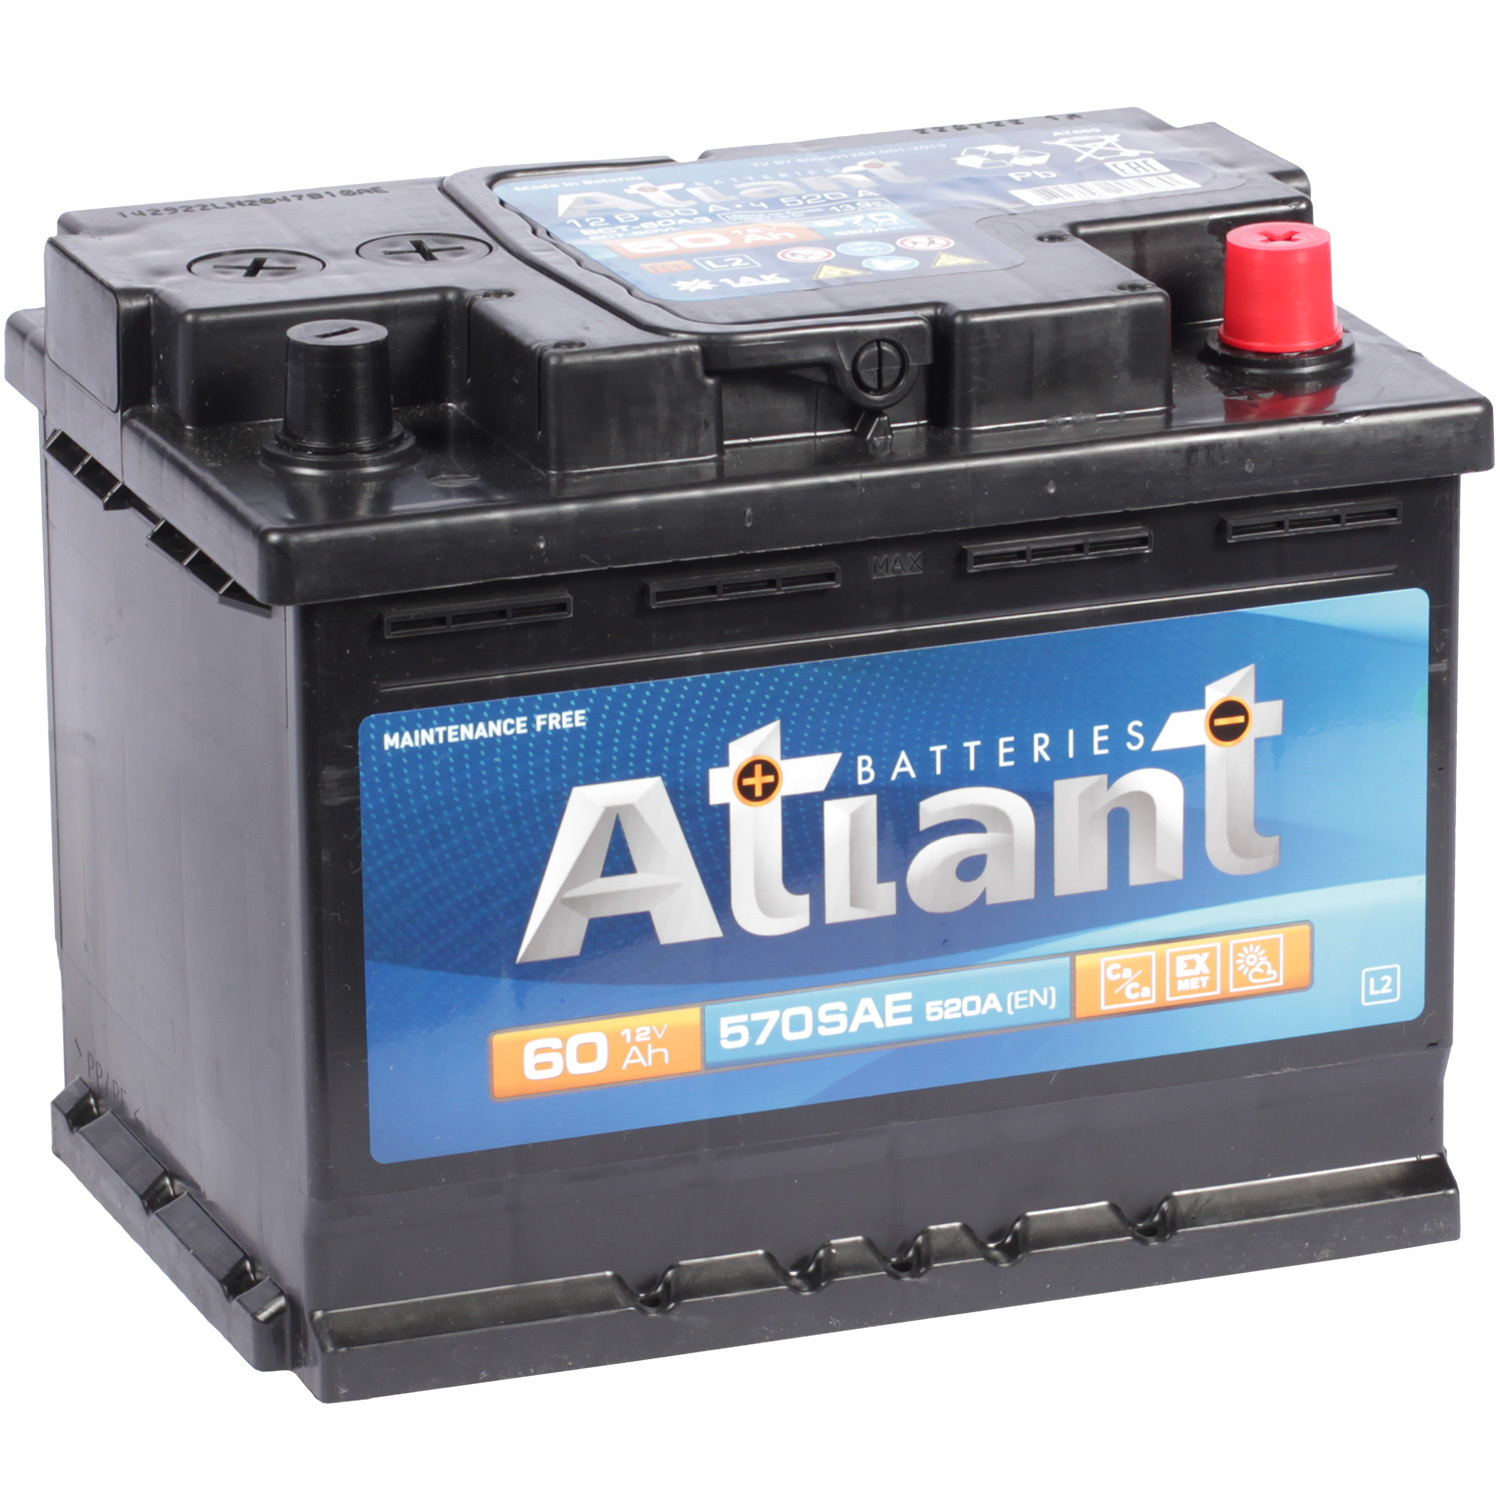 Atlant Автомобильный аккумулятор Atlant 60 Ач обратная полярность L2 atlant автомобильный аккумулятор atlant 60 ач обратная полярность l2